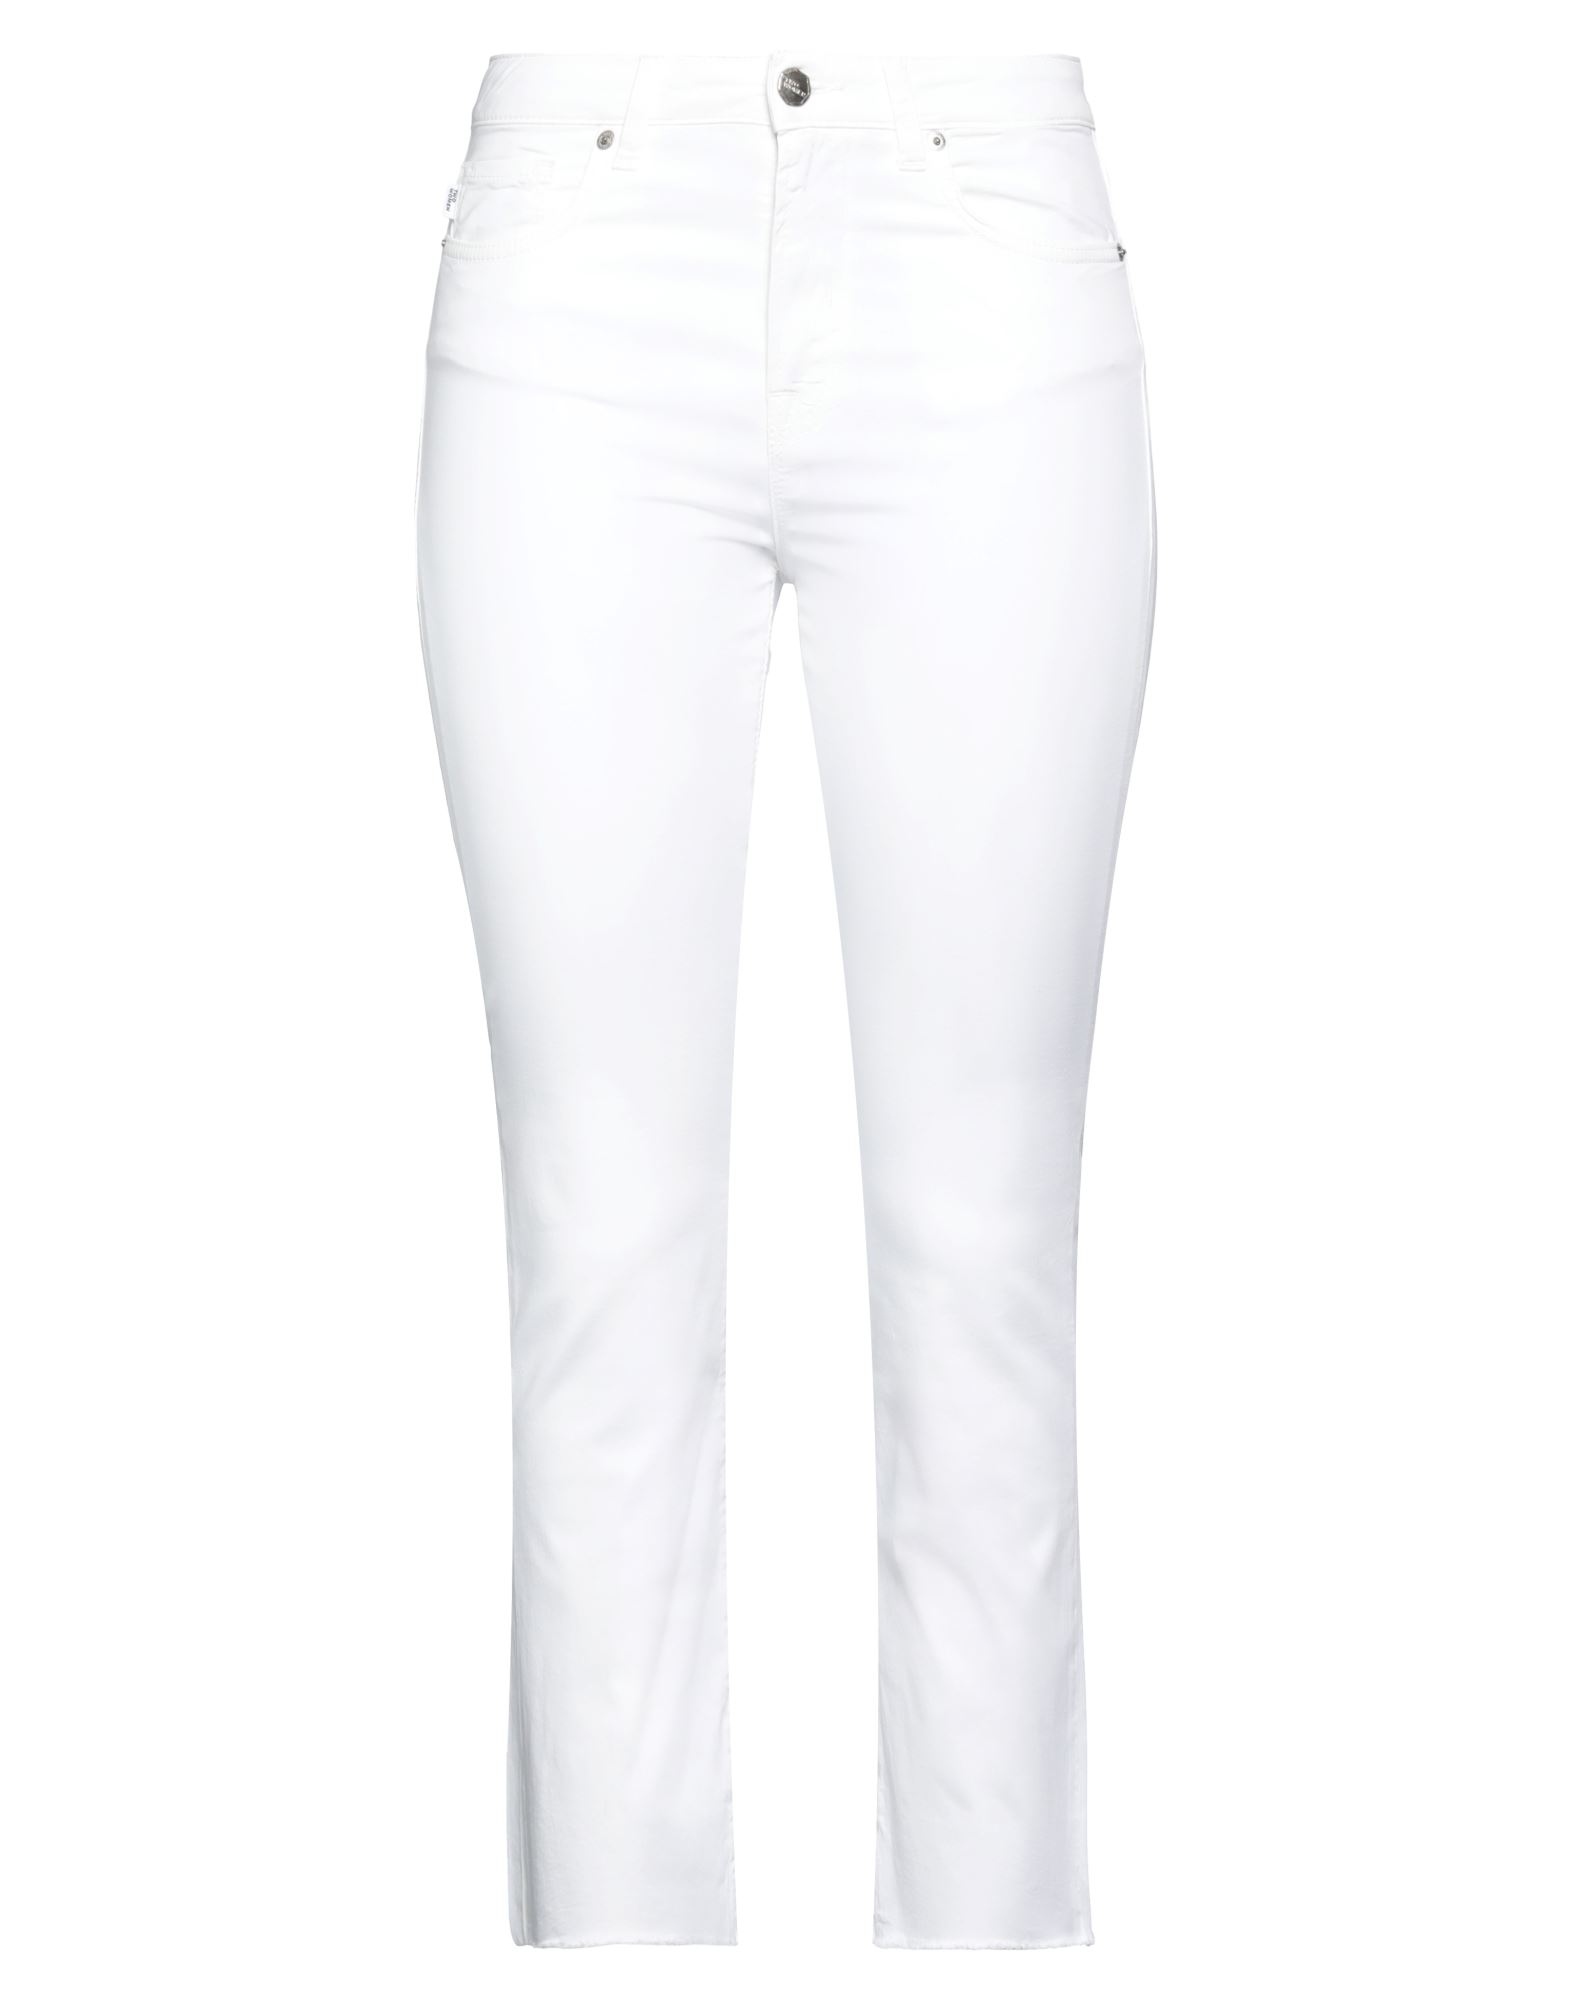 Shop 2w2m Woman Pants White Size 27 Cotton, Elastane